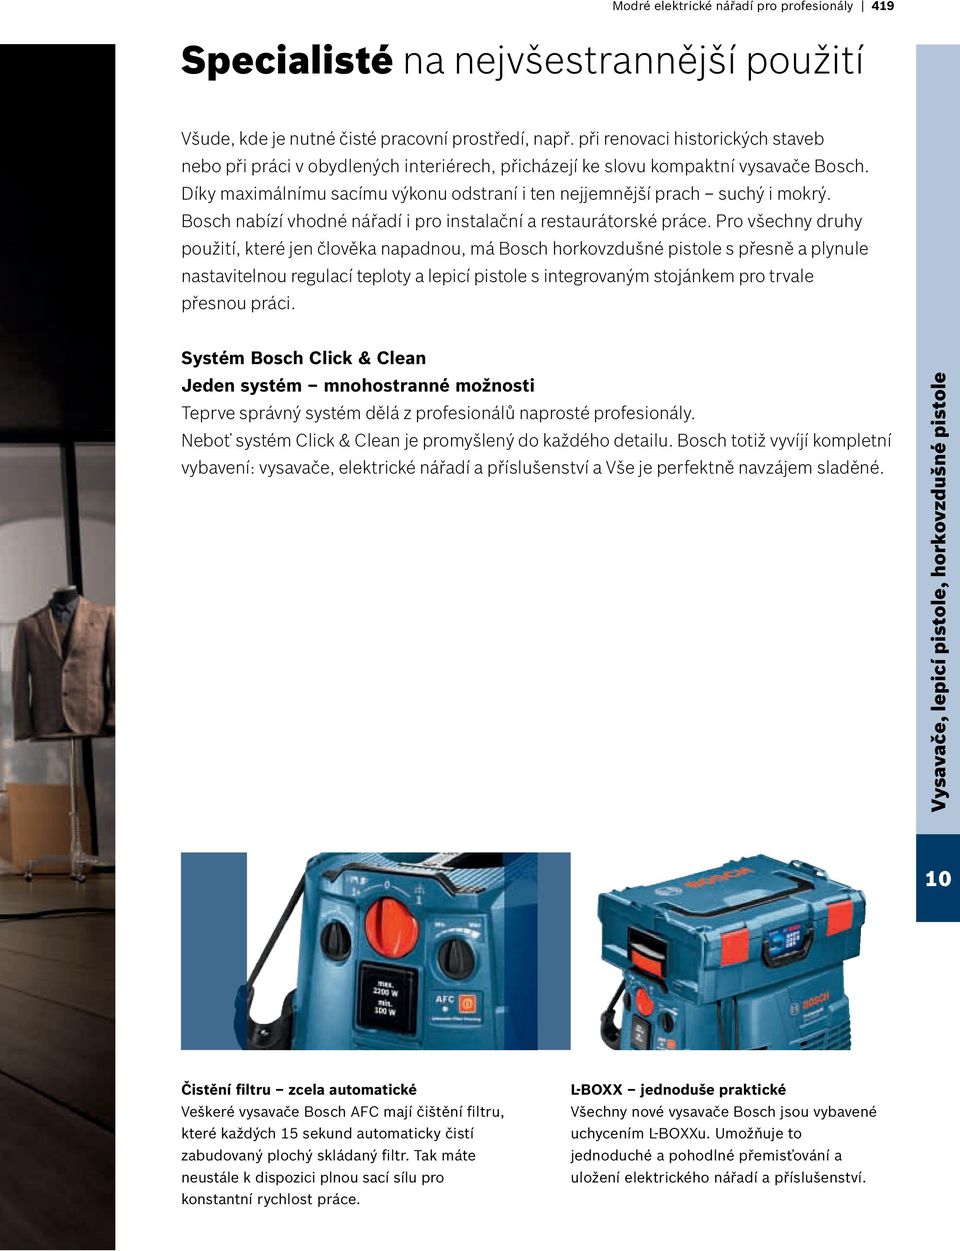 Bosch nabízí vhodné nářadí i pro instalační a restaurátorské práce.